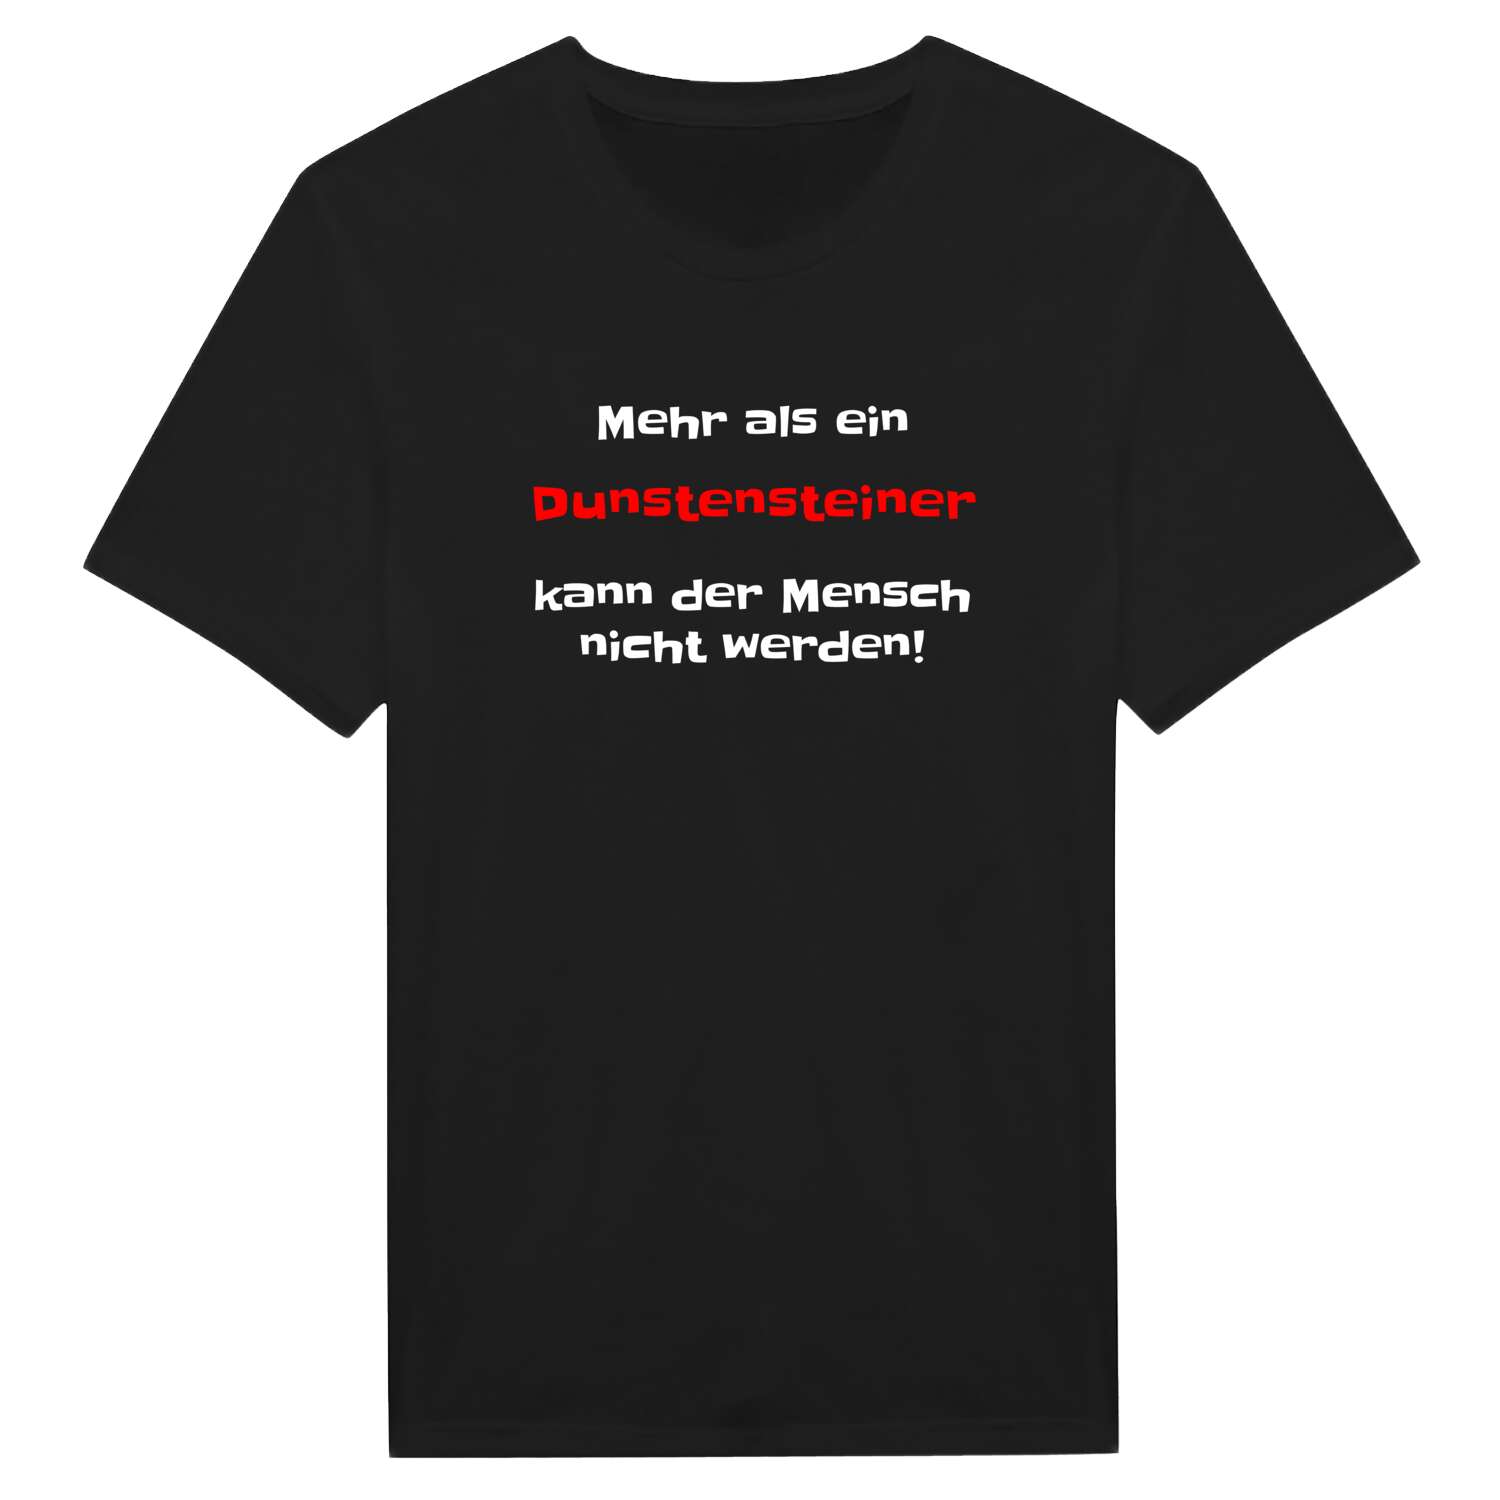 Dunstenstein T-Shirt »Mehr als ein«